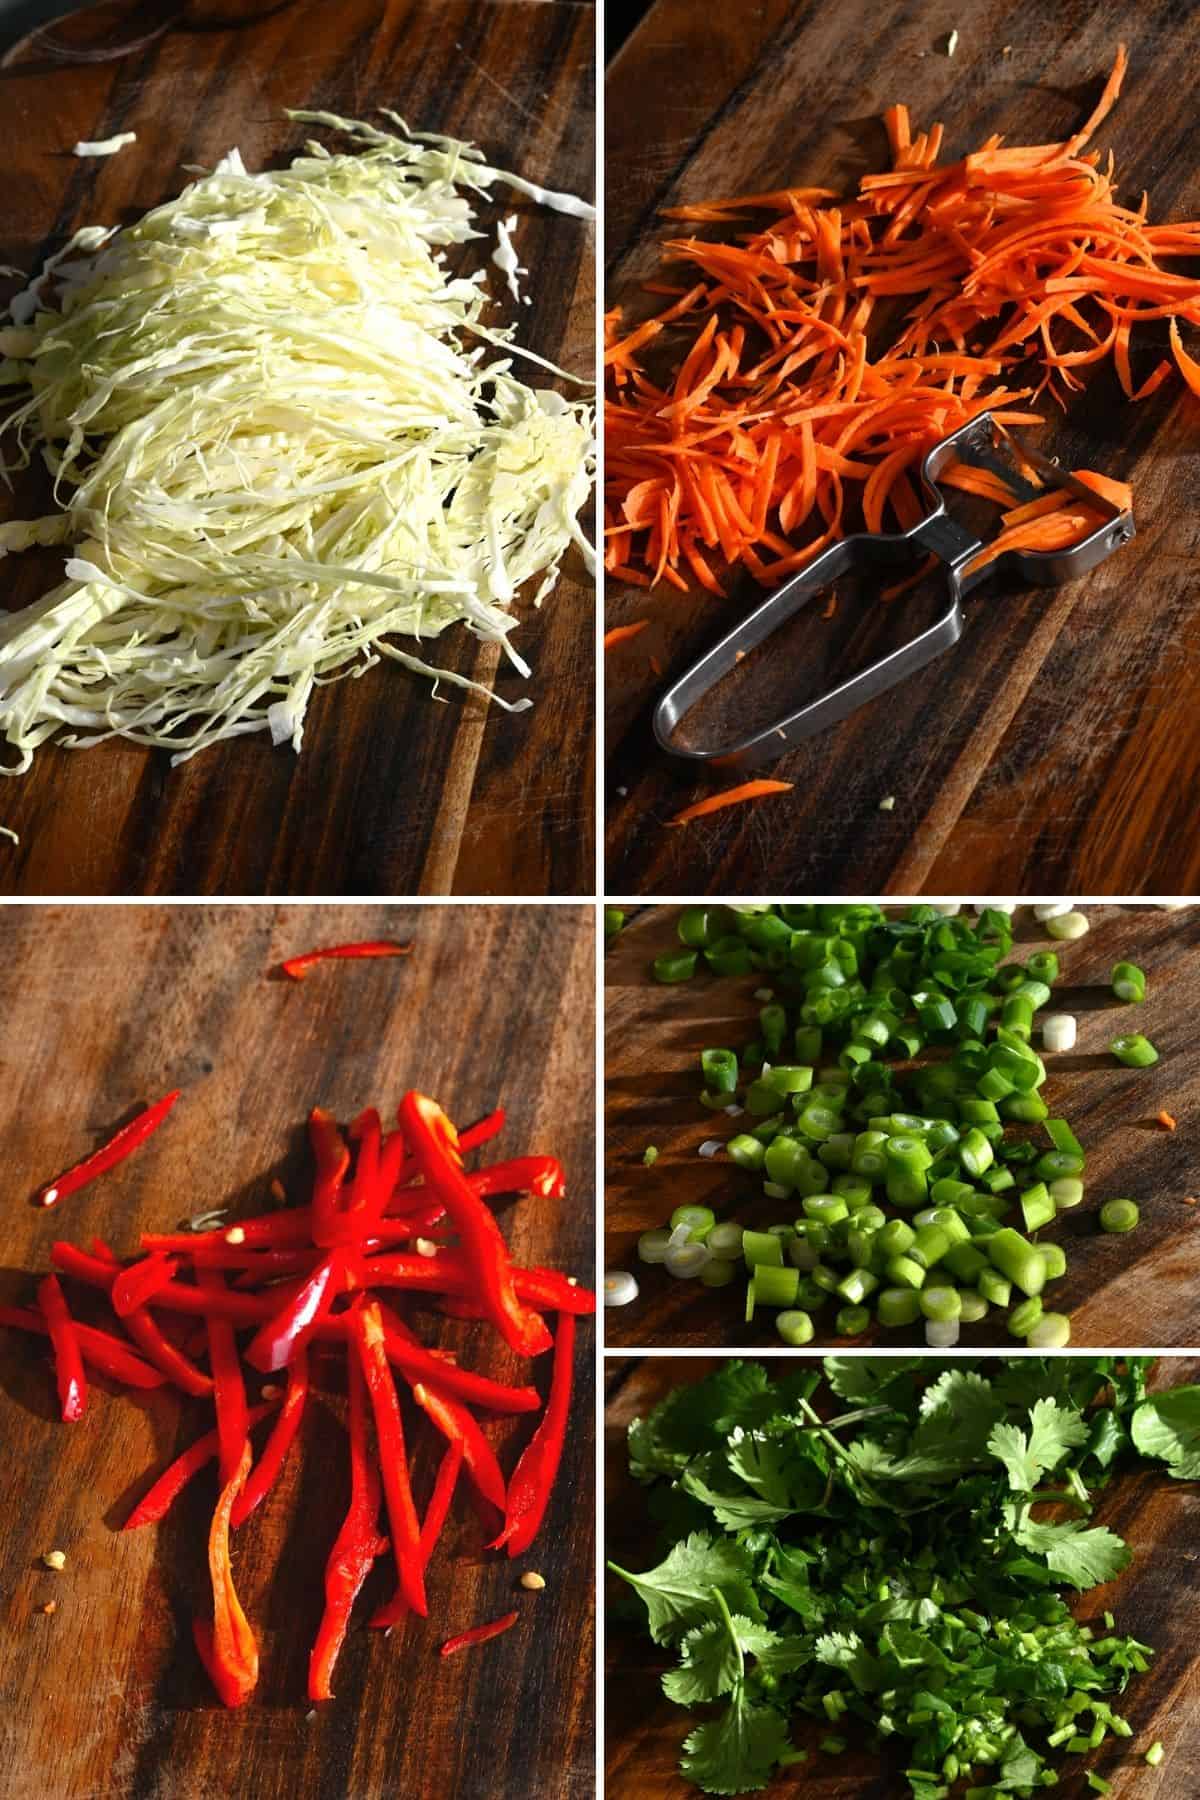 Steps for preparing salad ingredients